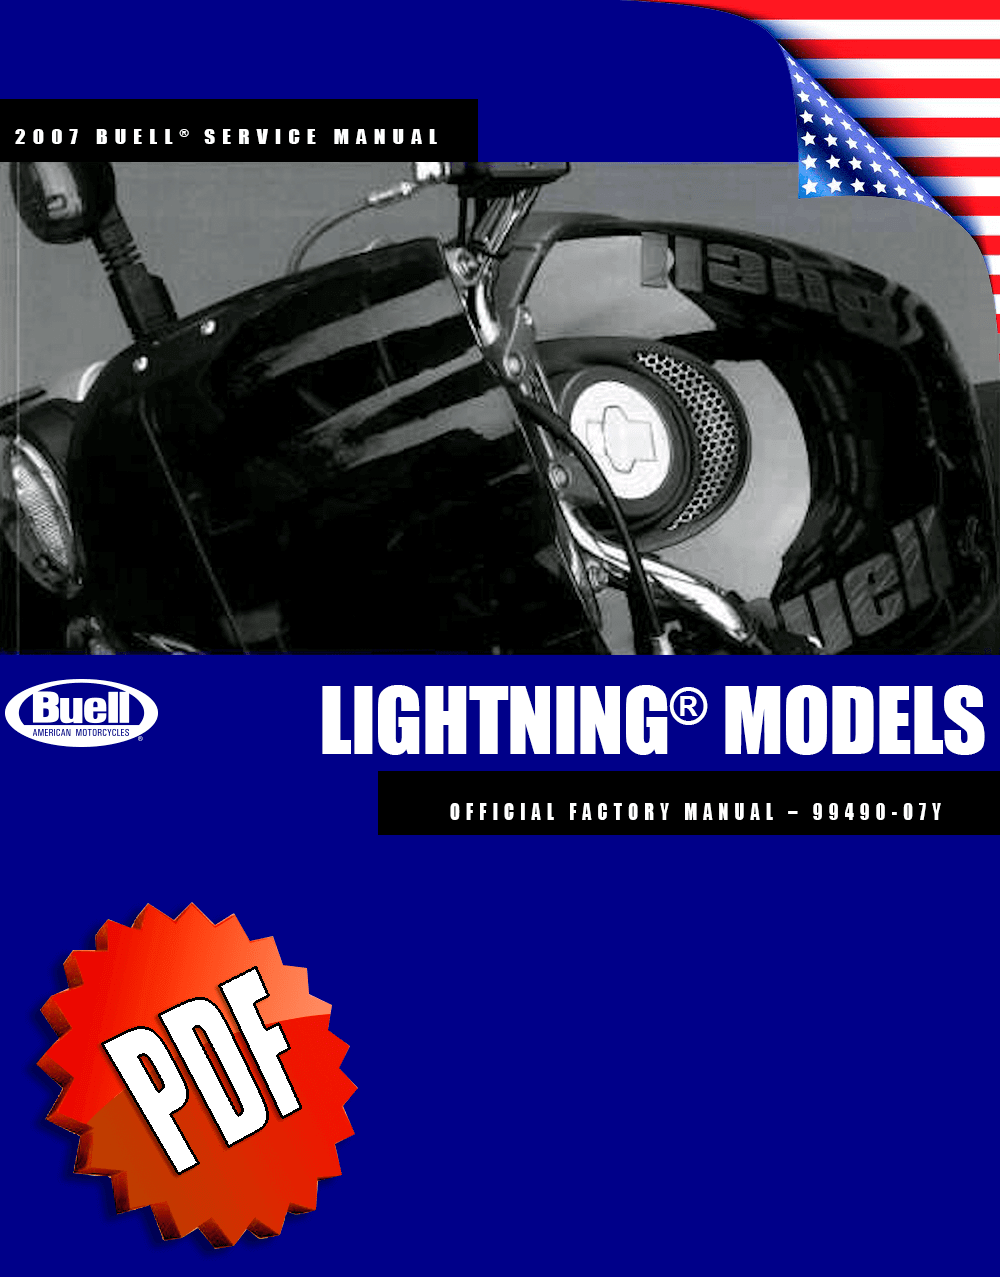 Buell Lightning Models 2007